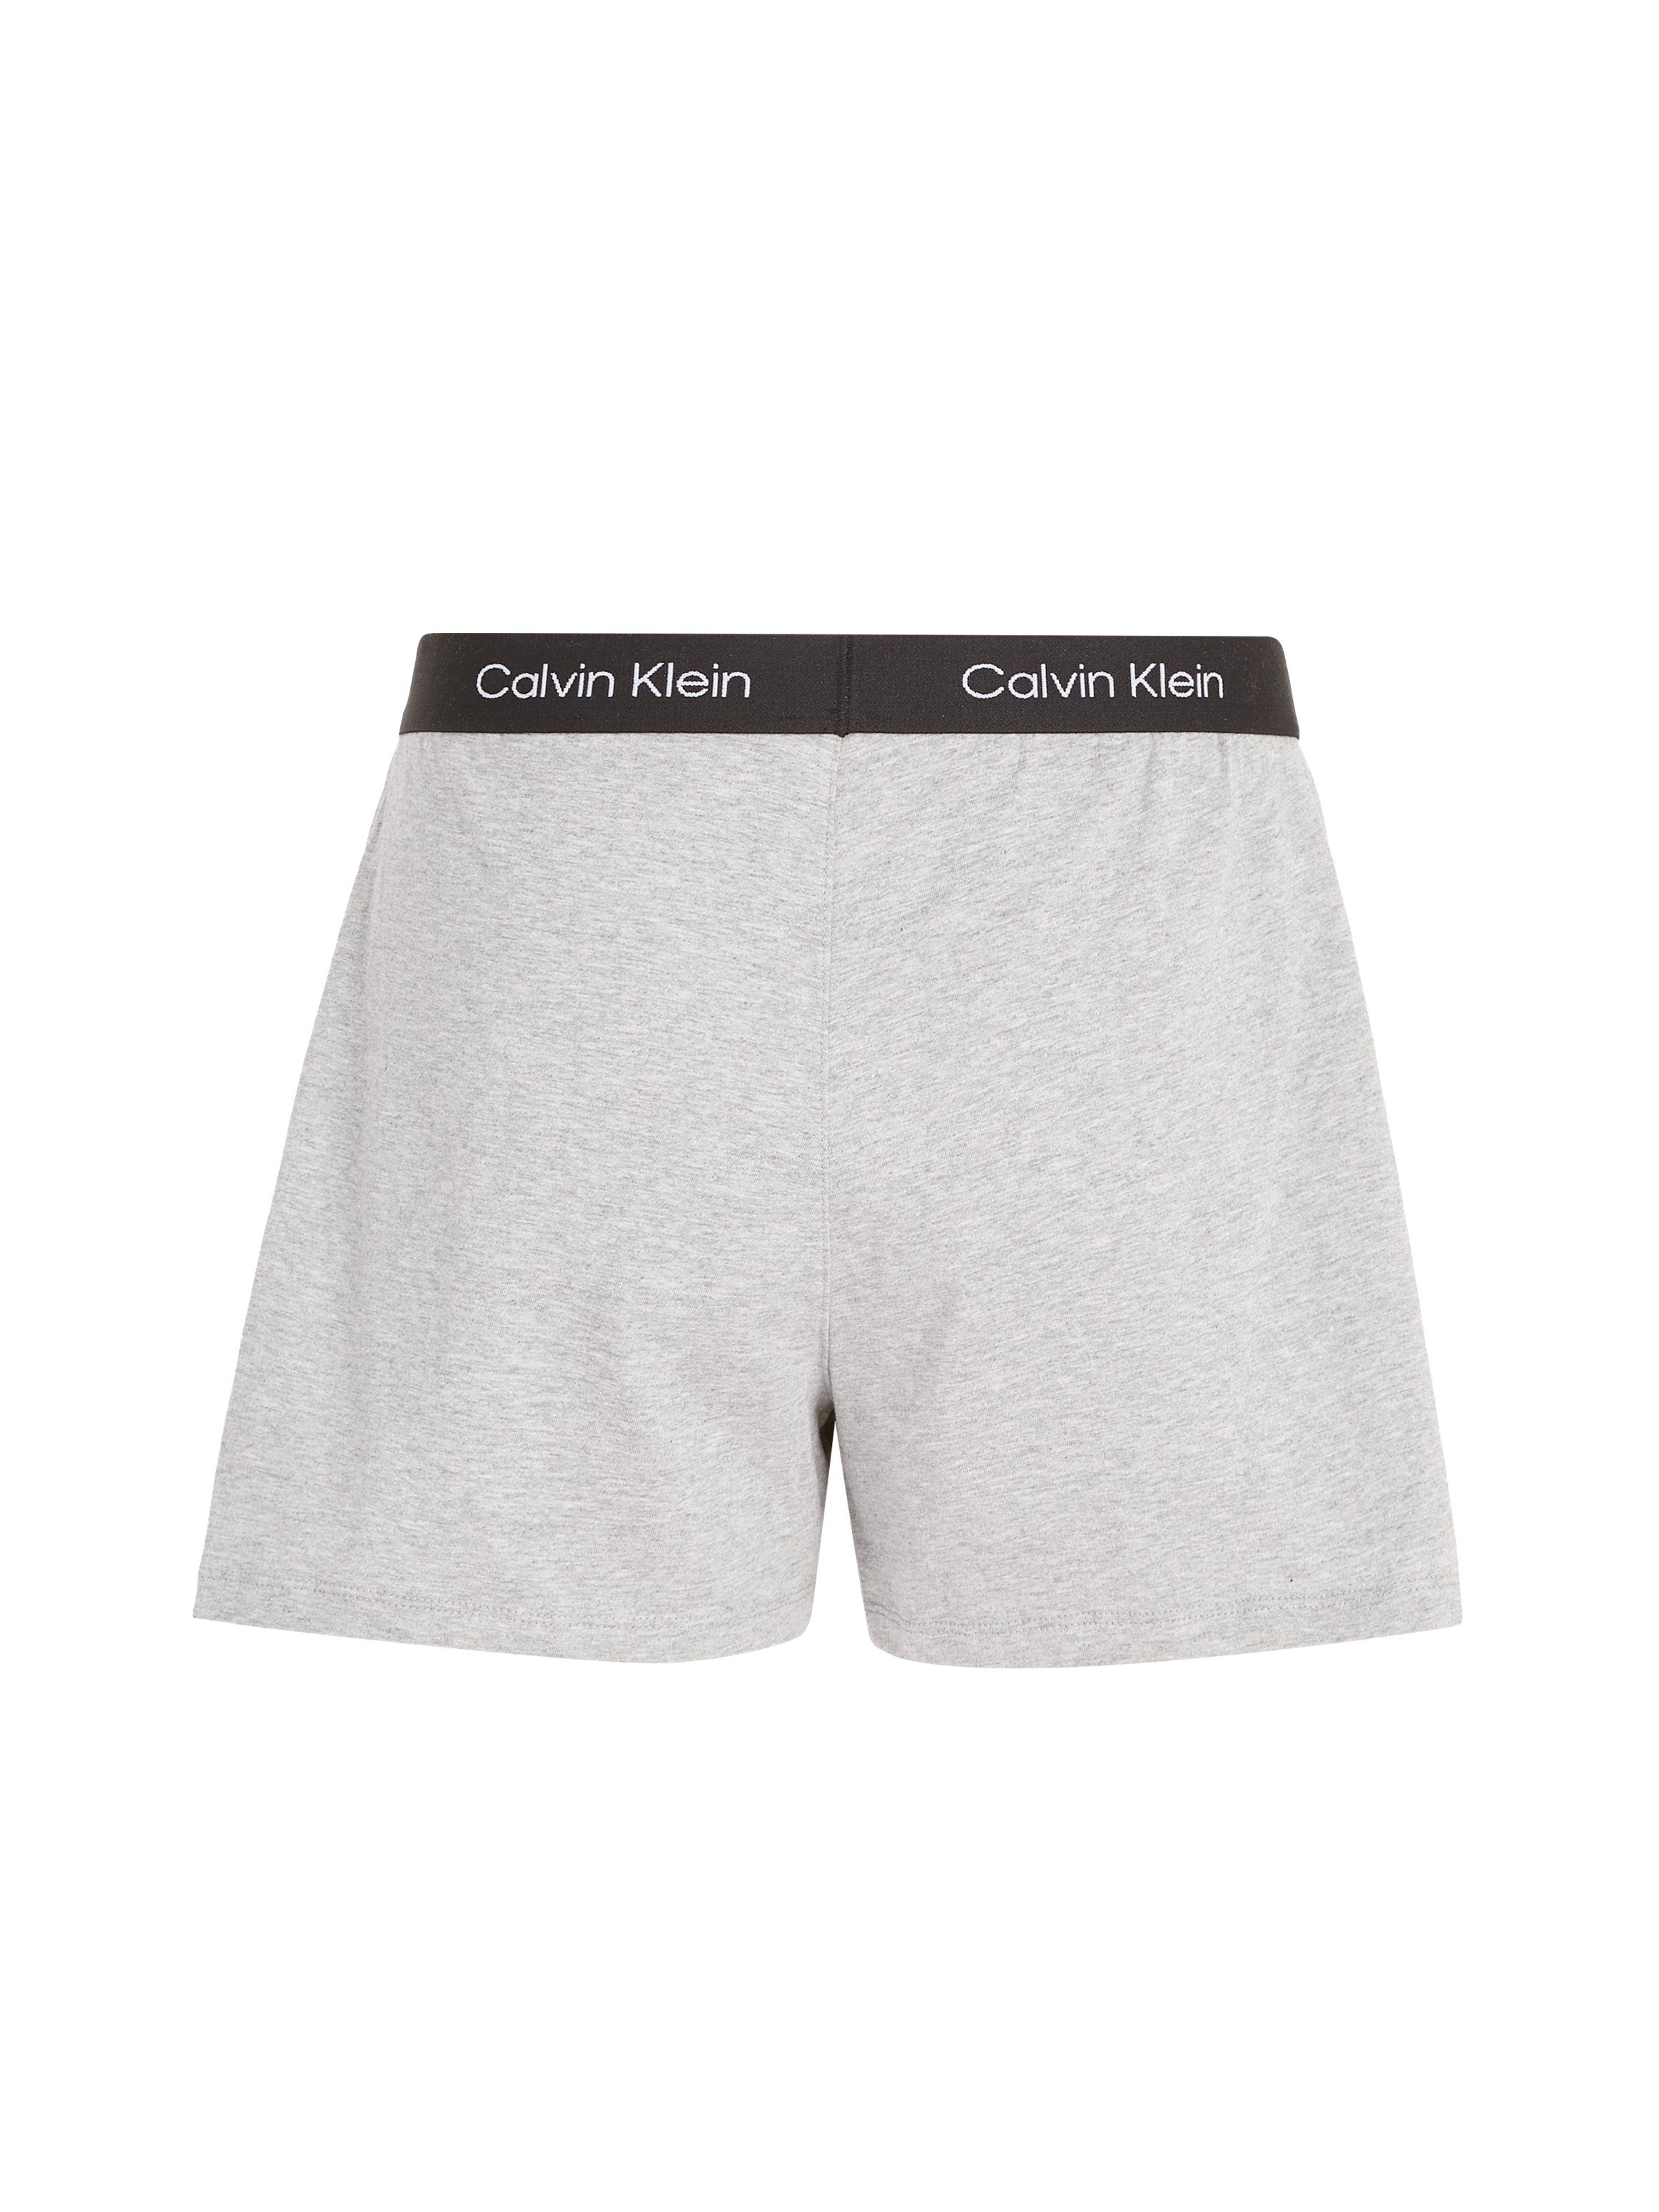 SLEEP GREY-HEATHER Logobund mit SHORT Schlafshorts Klein klassischem Underwear Calvin